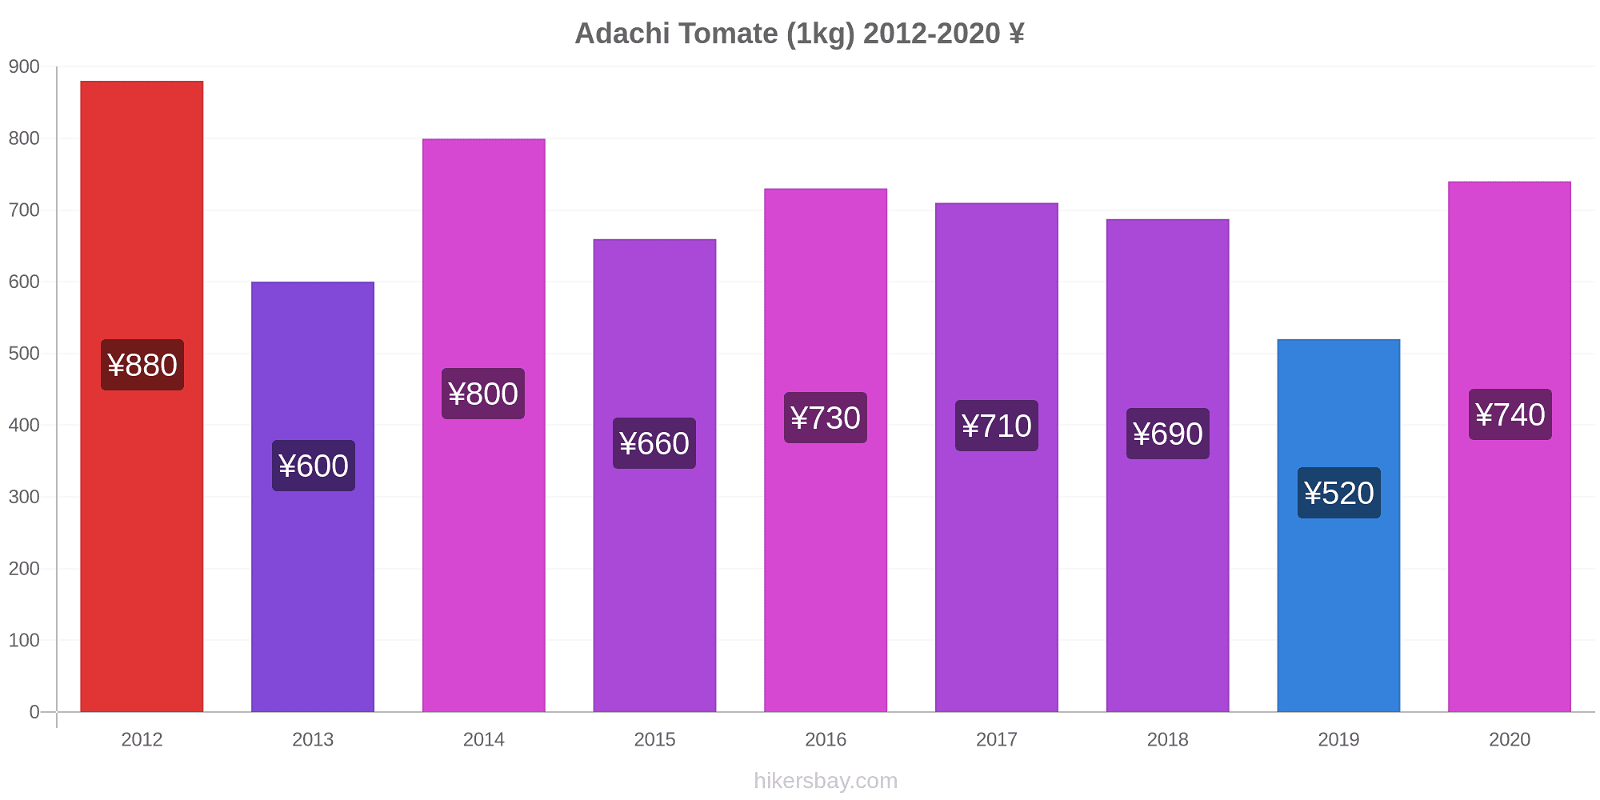 Adachi cambios de precios Tomate (1kg) hikersbay.com